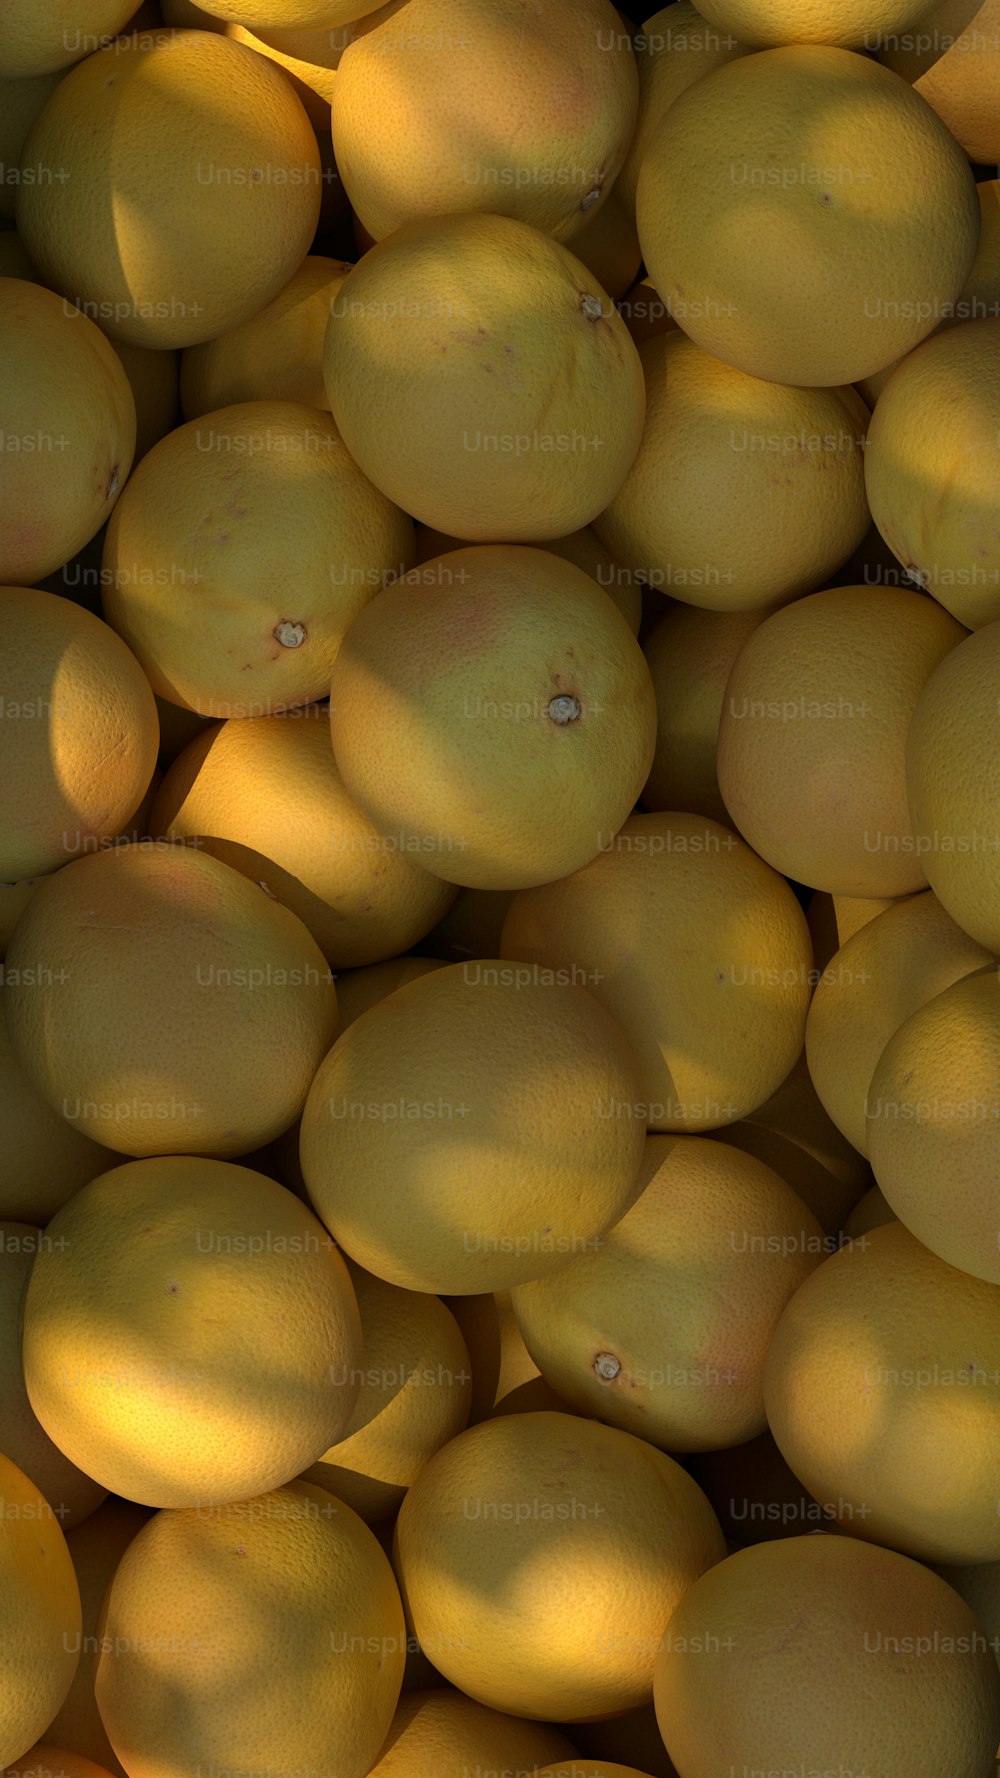 Ein Haufen Zitronen sitzt nebeneinander